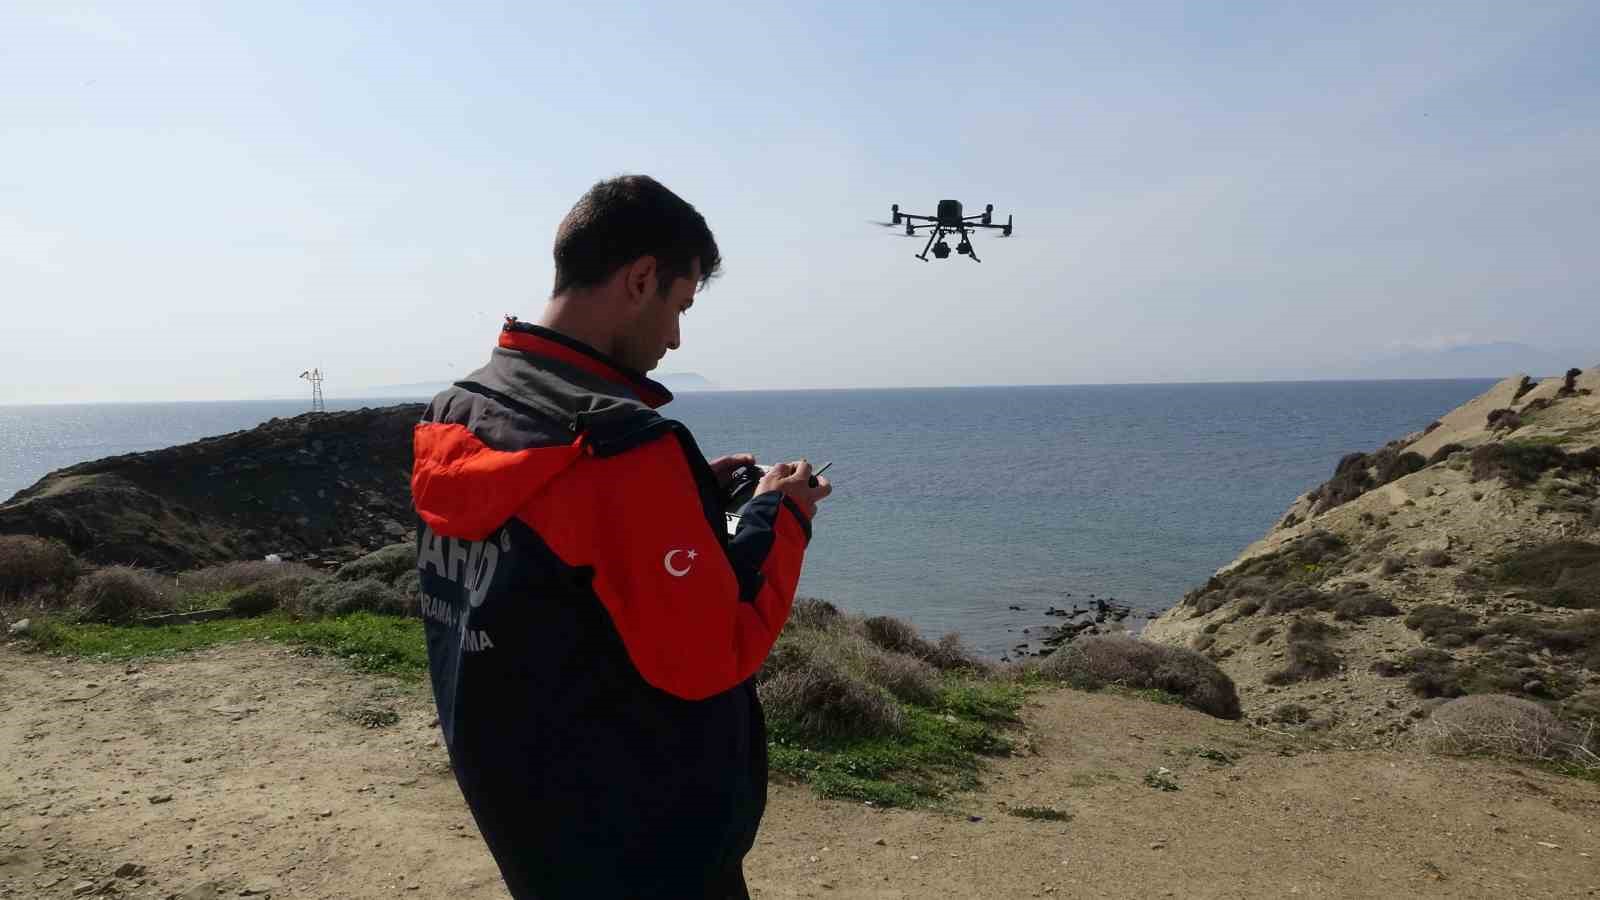 canakkalede batan bottaki kayip duzensiz gocmenler dron ile araniyor 2 e7i47UFQ